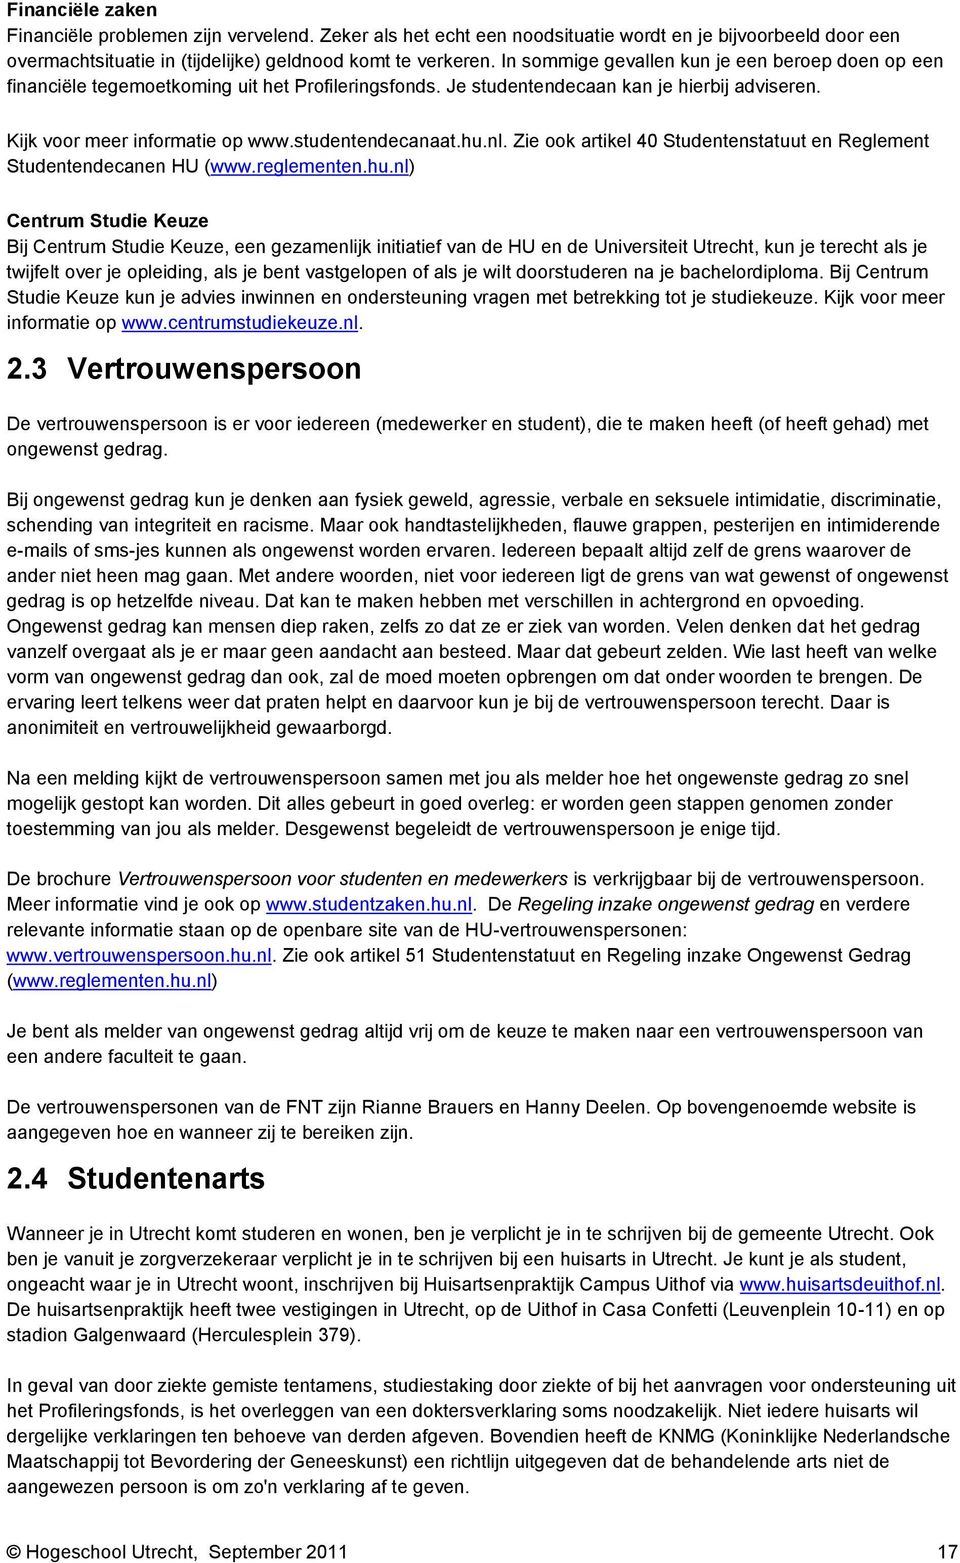 hu.nl. Zie ook artikel 40 Studentenstatuut en Reglement Studentendecanen HU (www.reglementen.hu.nl) Centrum Studie Keuze Bij Centrum Studie Keuze, een gezamenlijk initiatief van de HU en de